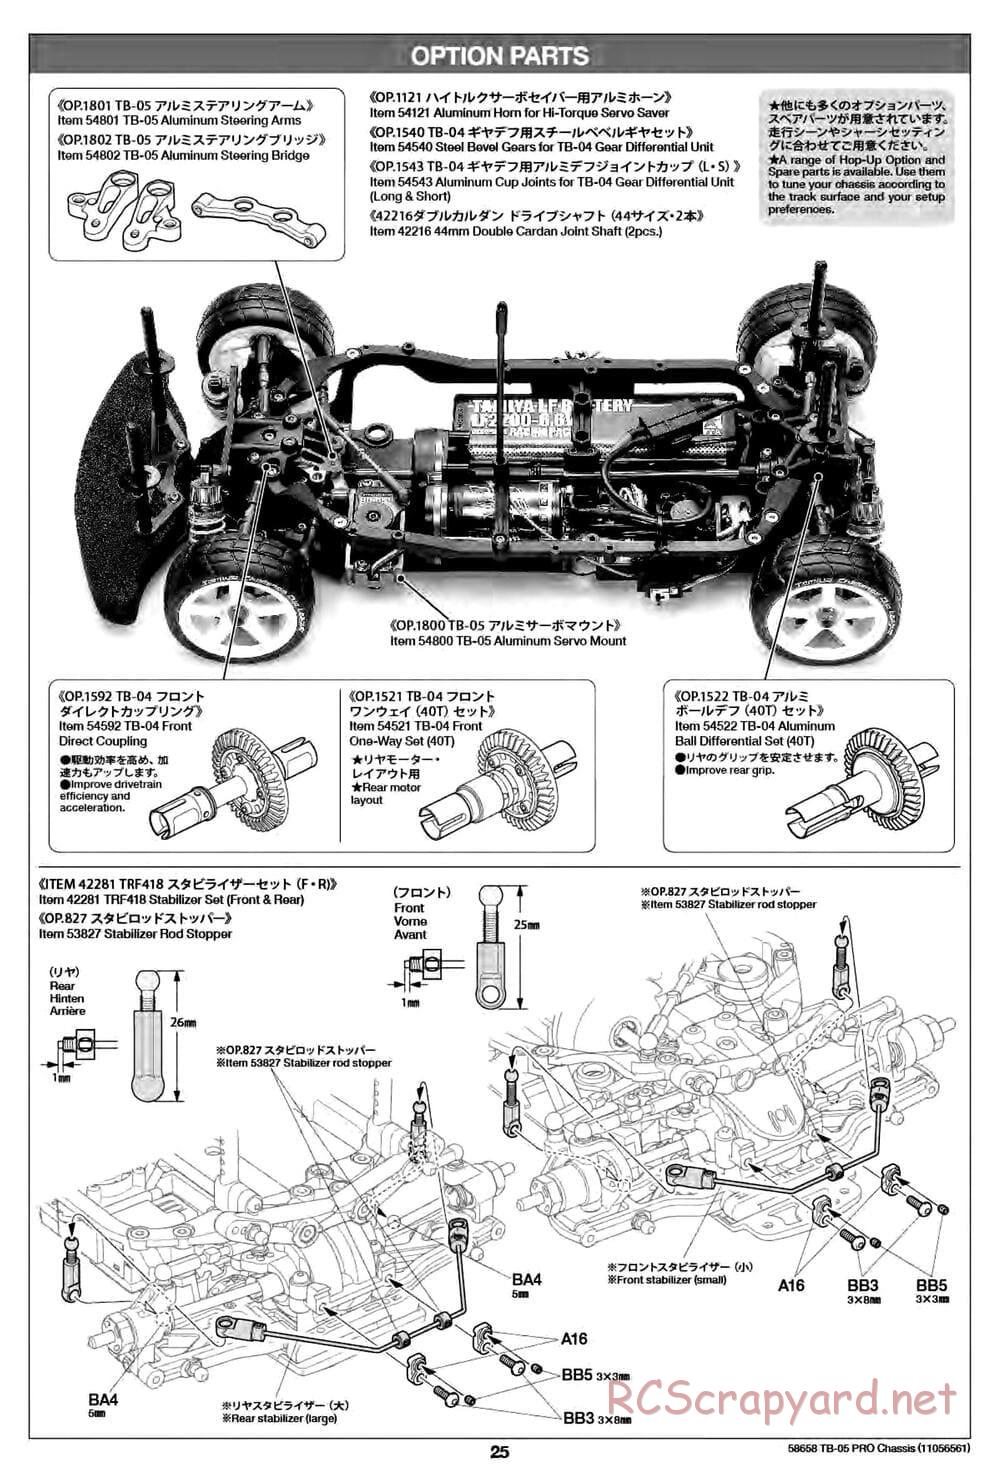 Tamiya - TB-05 Pro Chassis - Manual - Page 25